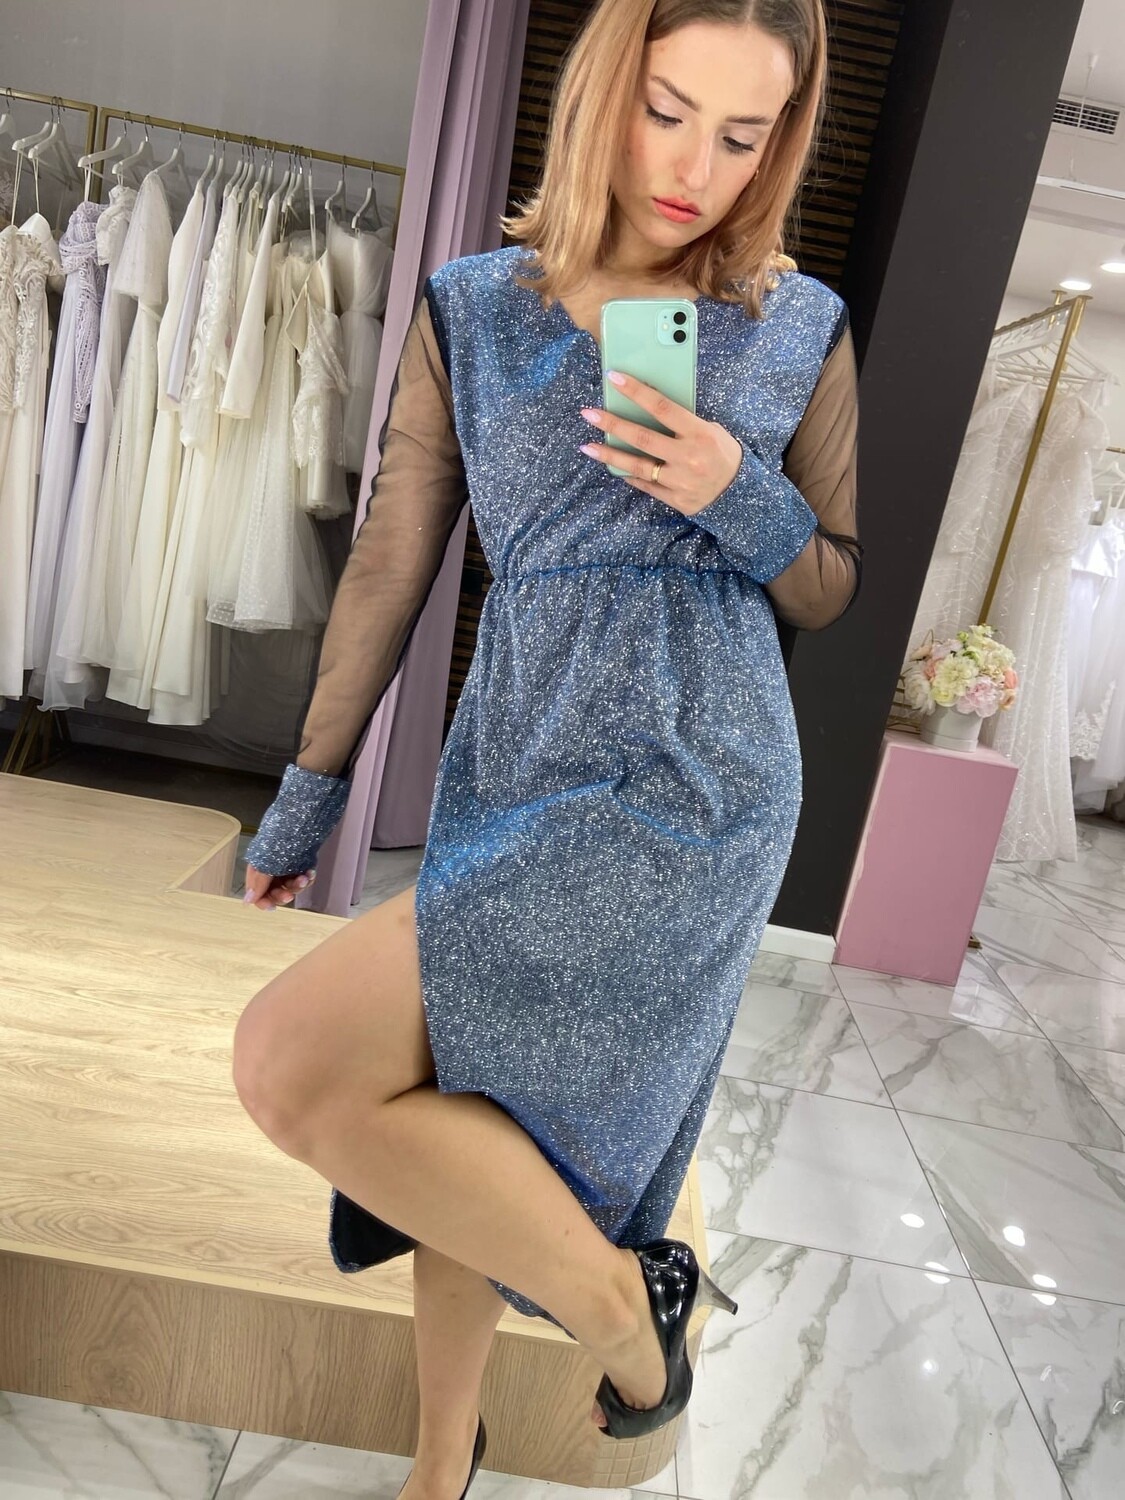 Вечернее платье голубое с прозрачными рукавами (56 размер)